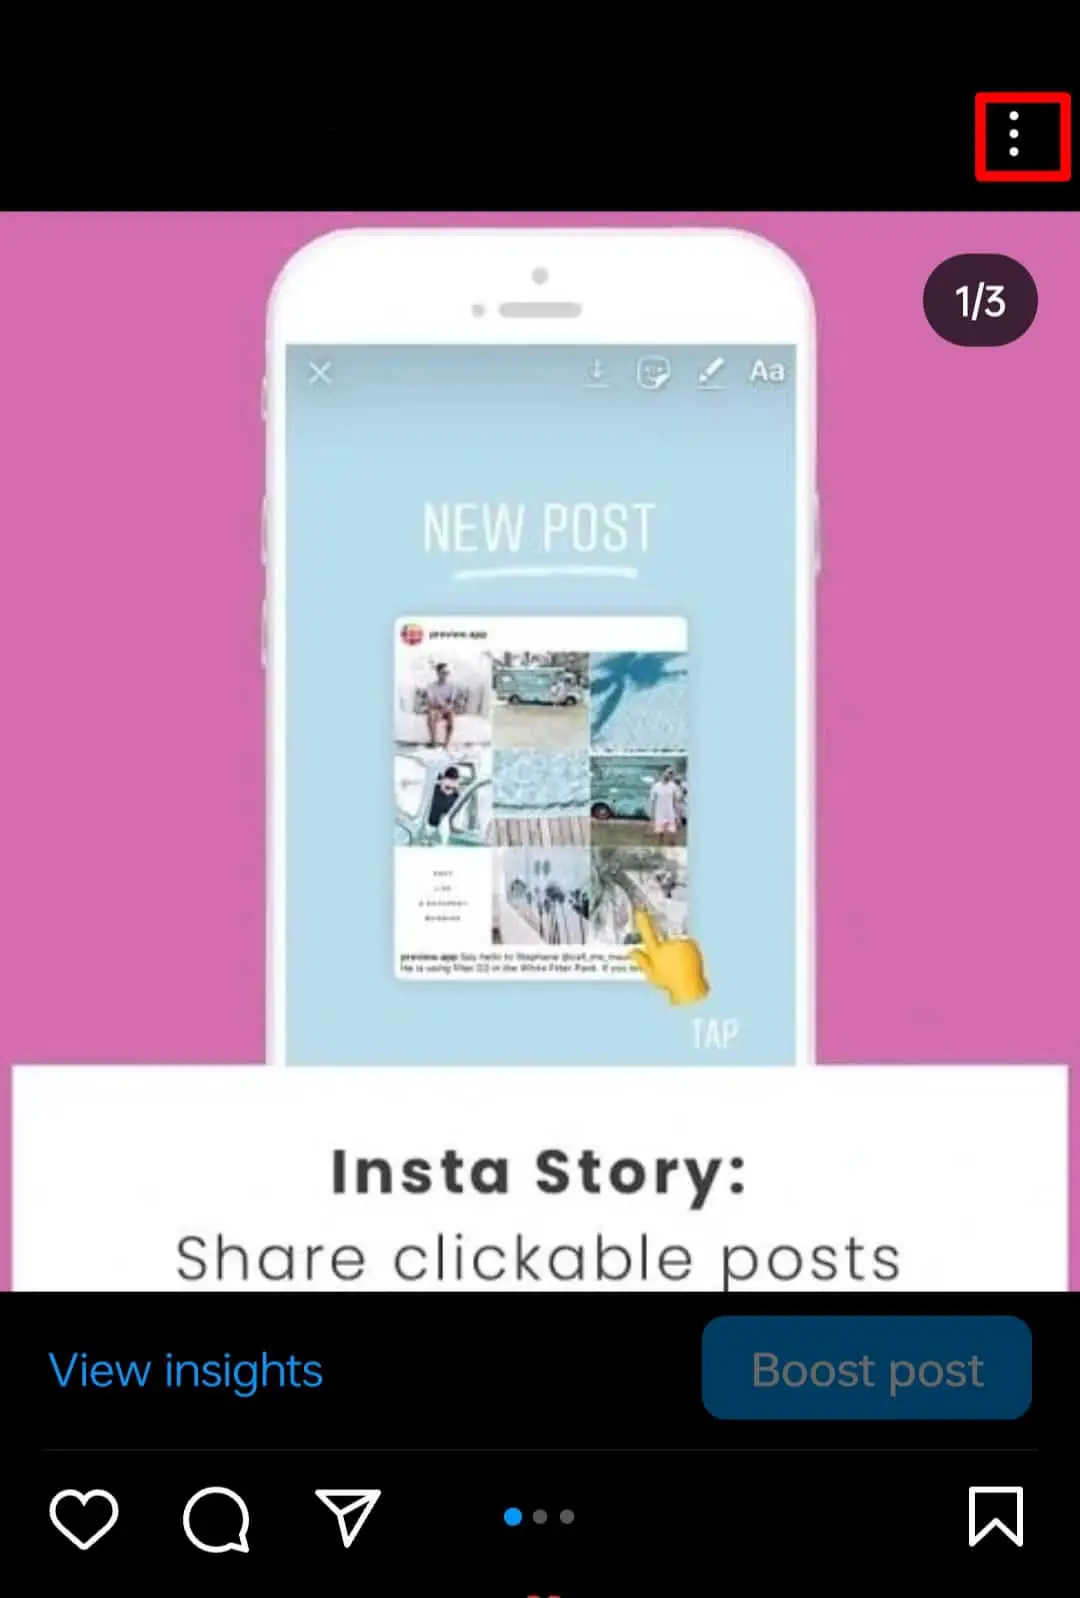 ¿Cómo reorganizar las publicaciones de Instagram?